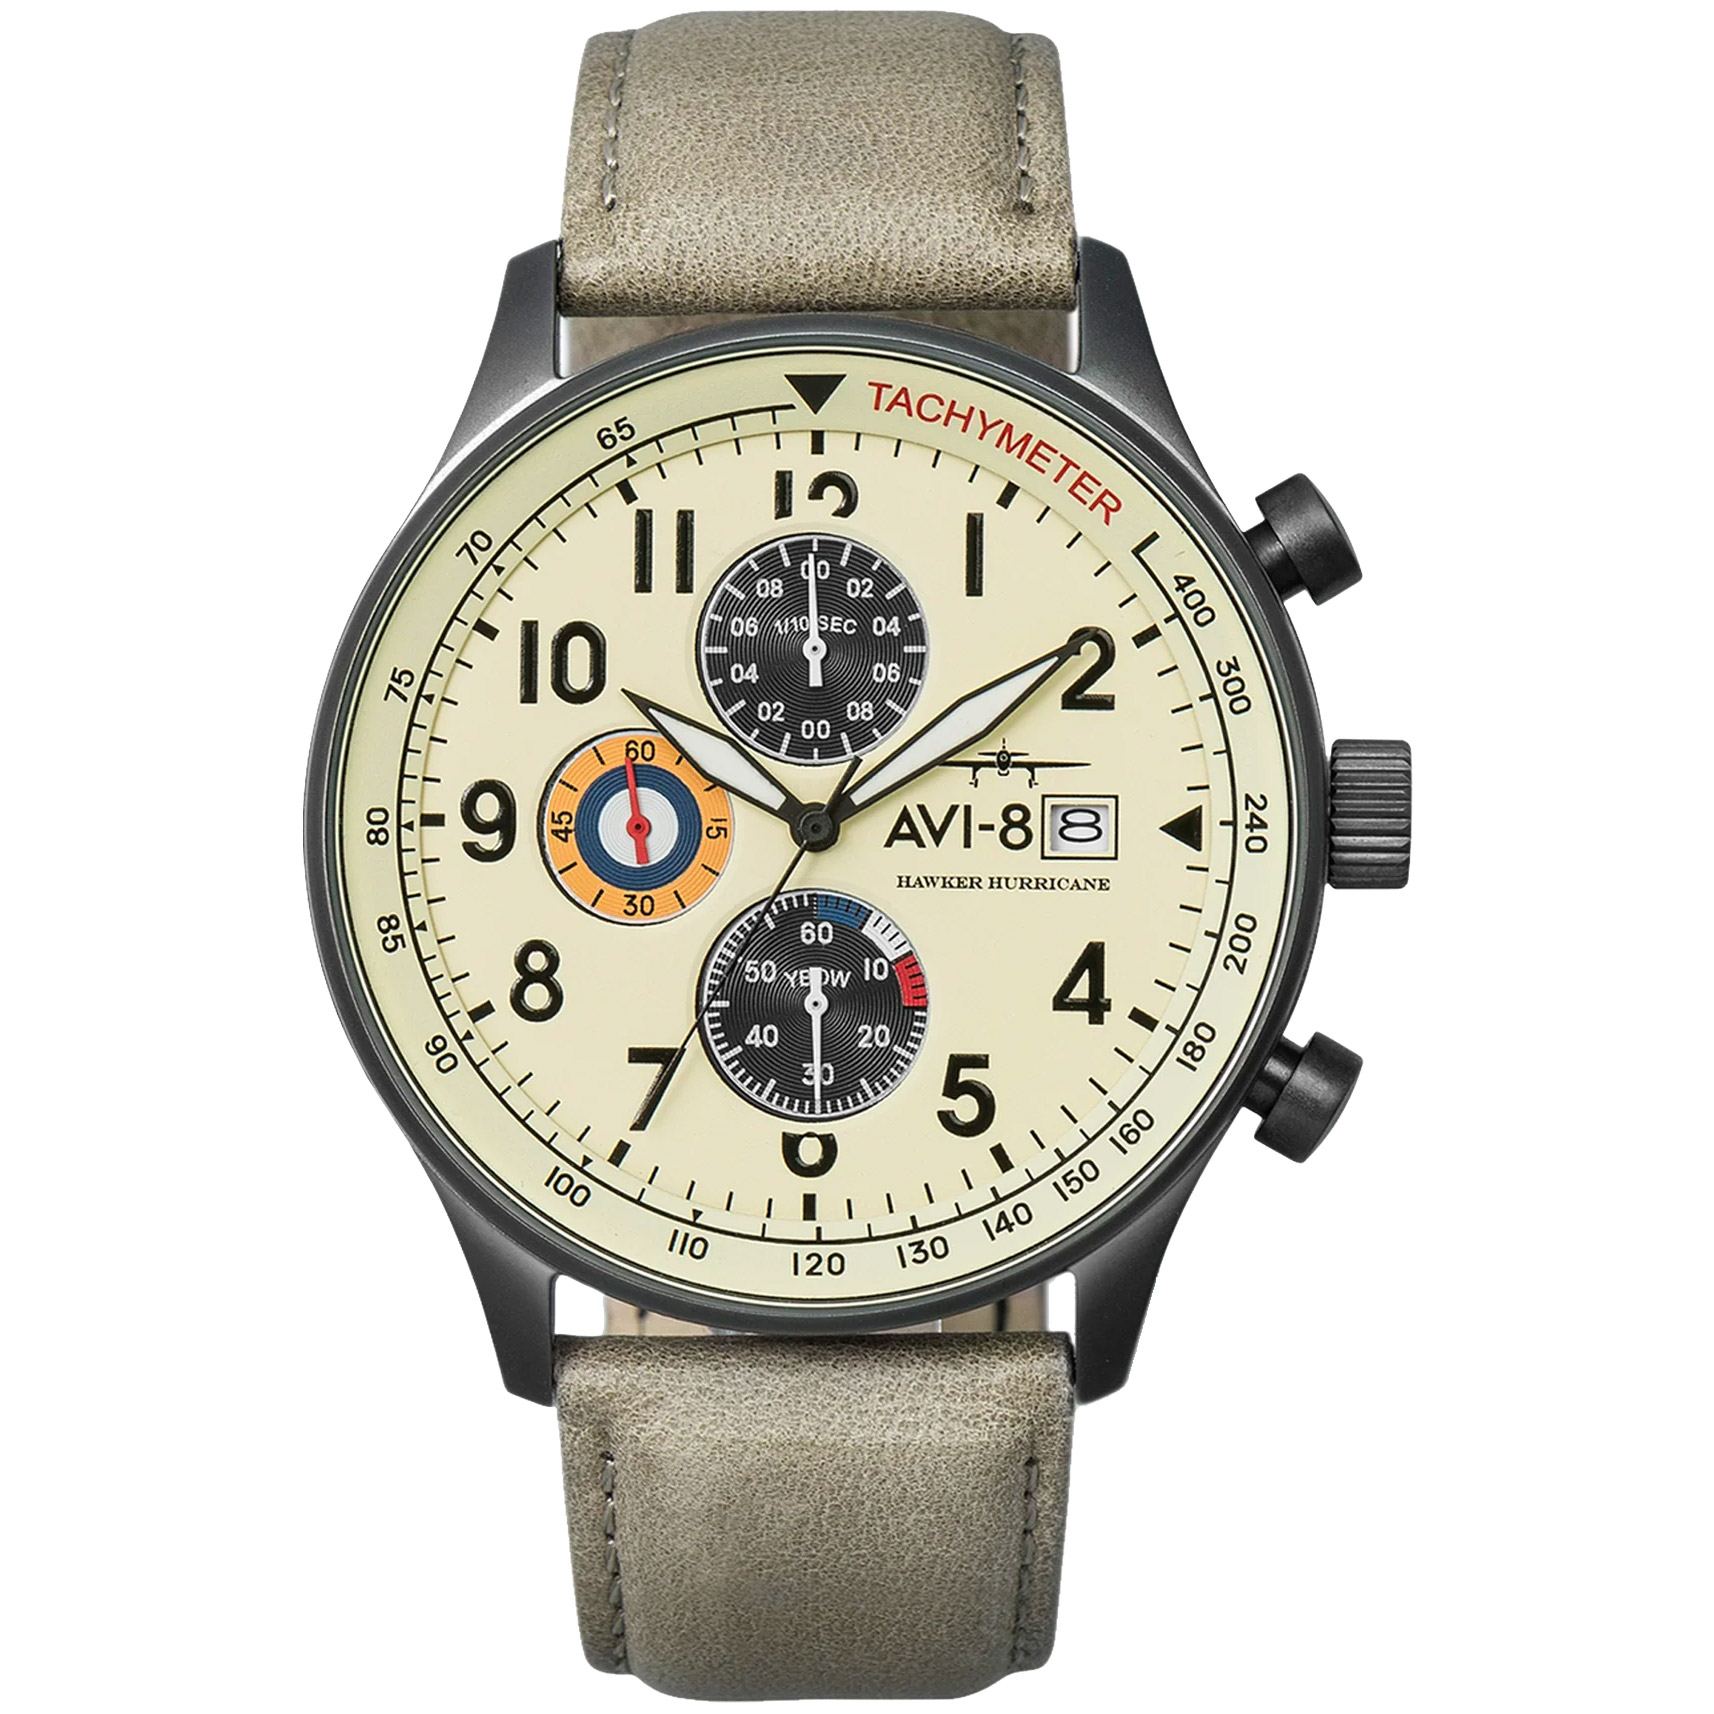 Часы avi-8 Hawker Hurricane. Часы наручные avi-8 av-4011-0c. Часы avi 8 av 4011. Hawker Typhoon avi-8 часы. Av 08fb